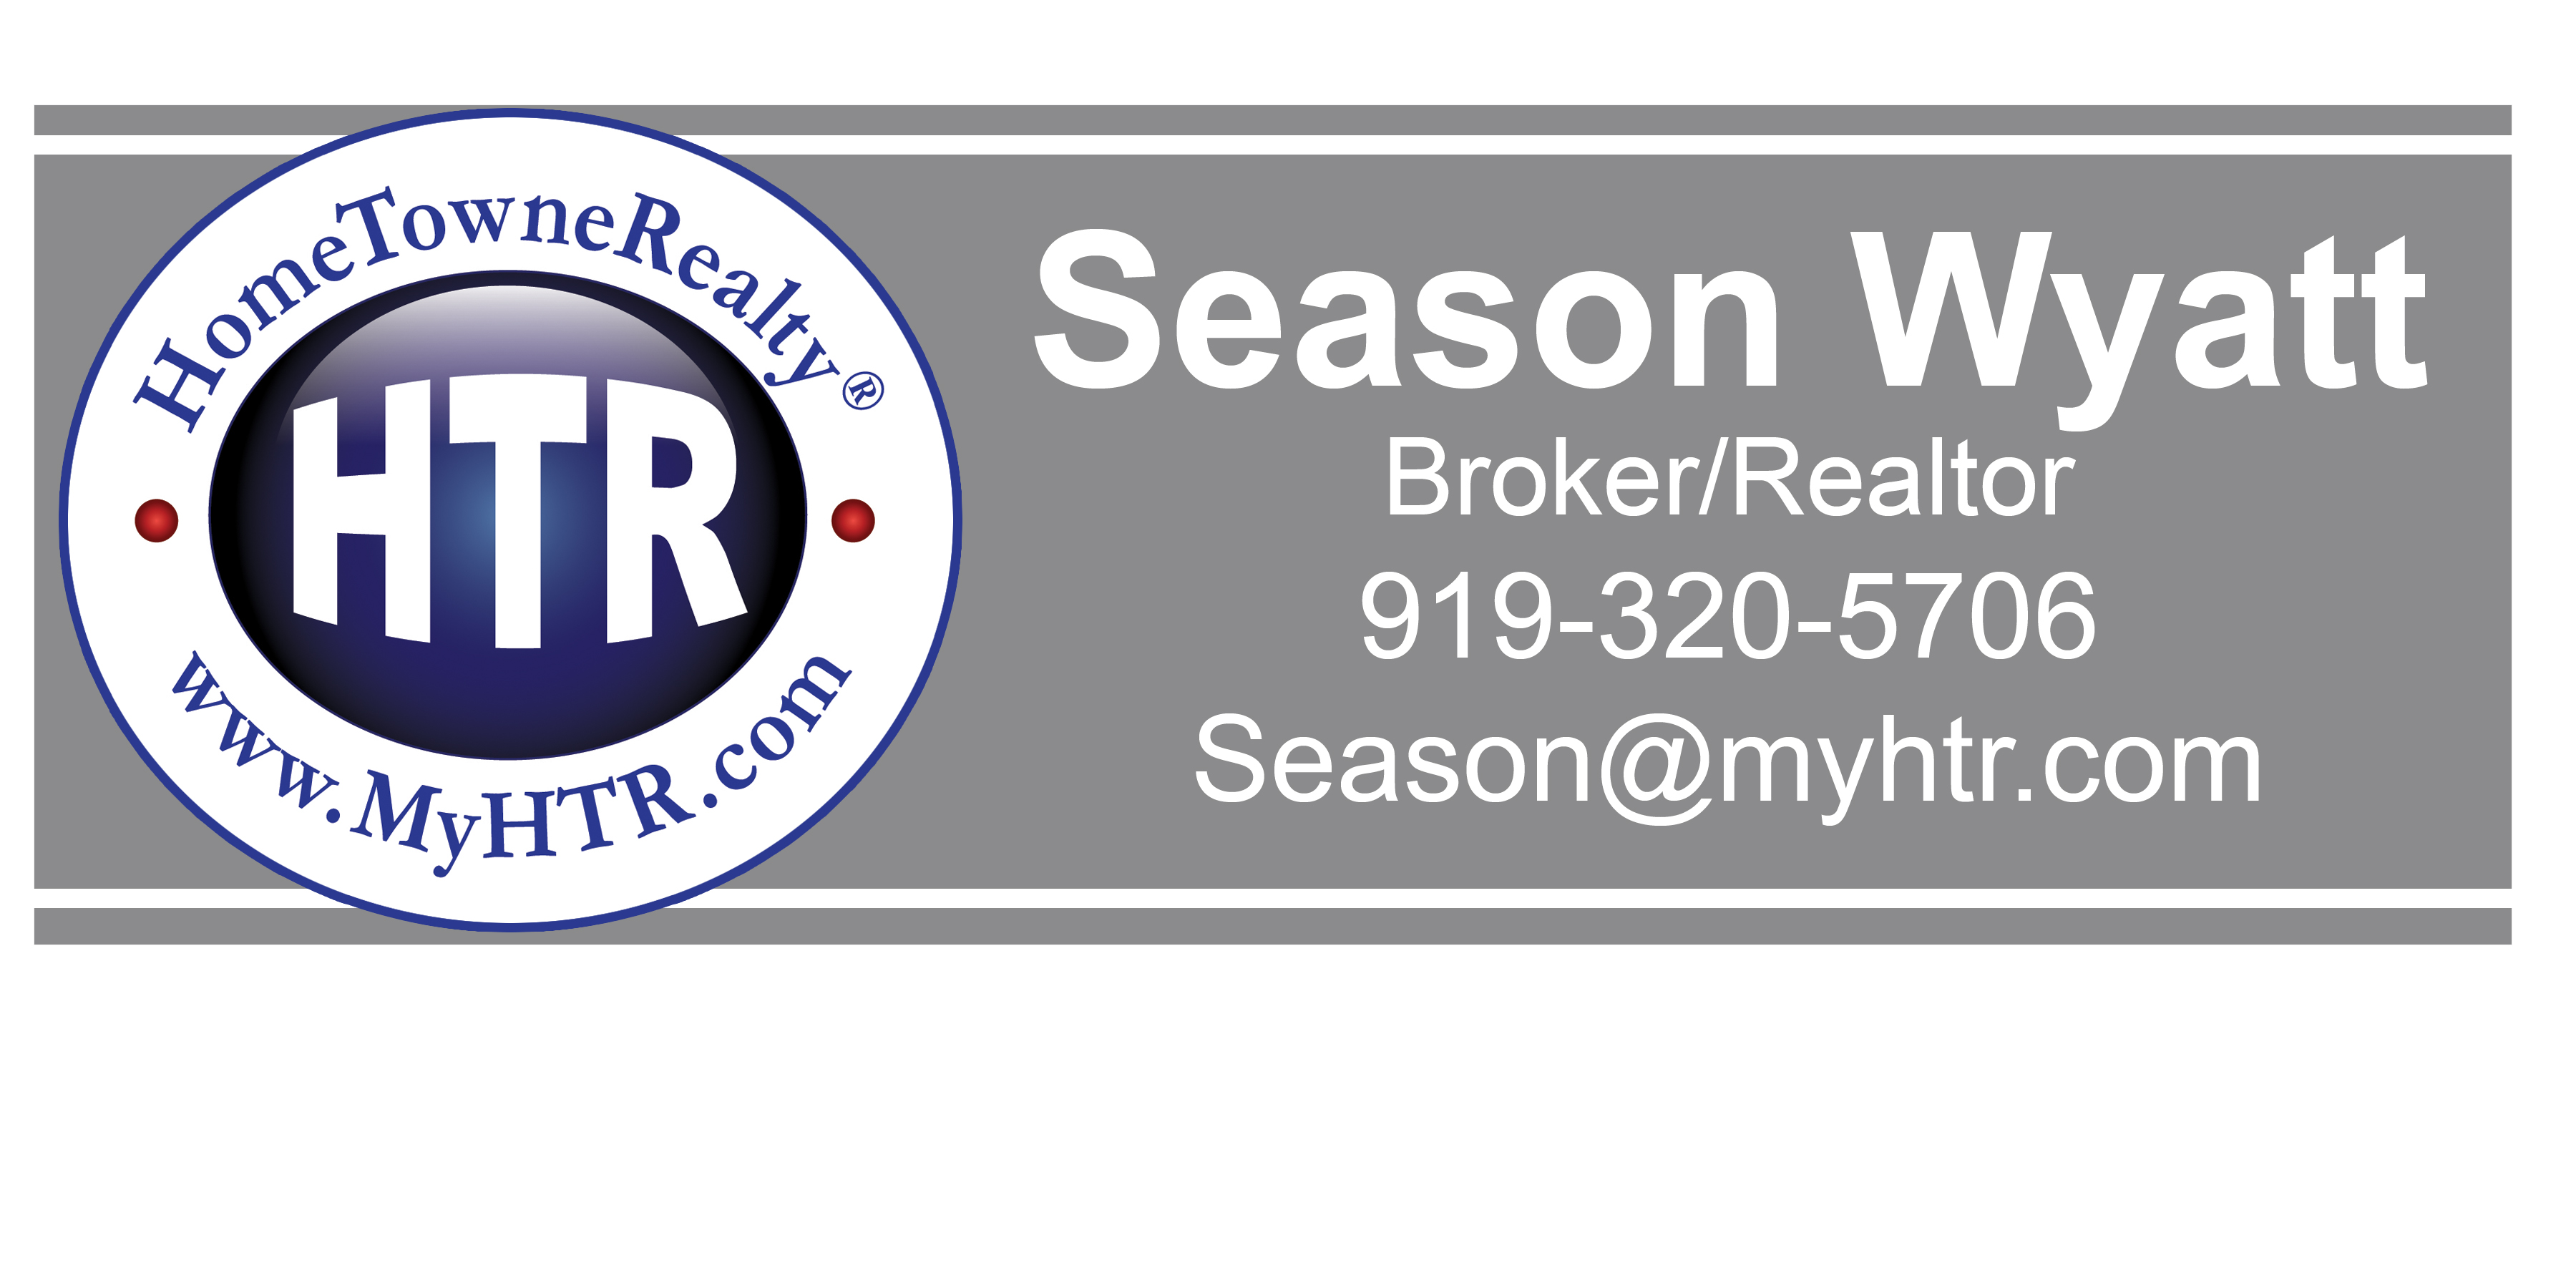 Sponsor Season Wyatt, HTR Broker/Realtor